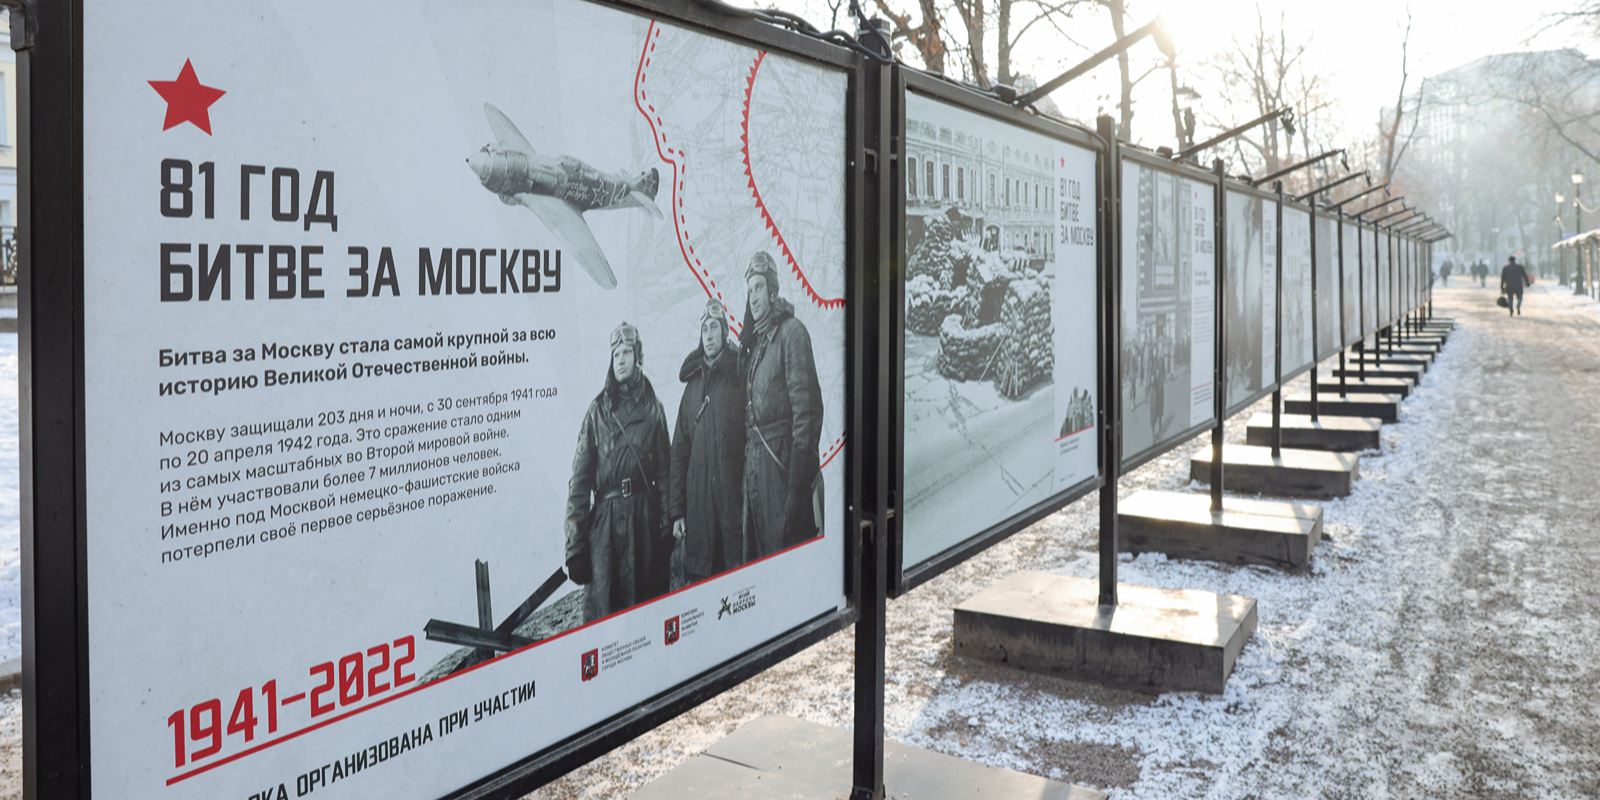 Зрители узнают о фронтовой и тыловой жизни города в 1941 году. Фото: сайт мэра Москвы